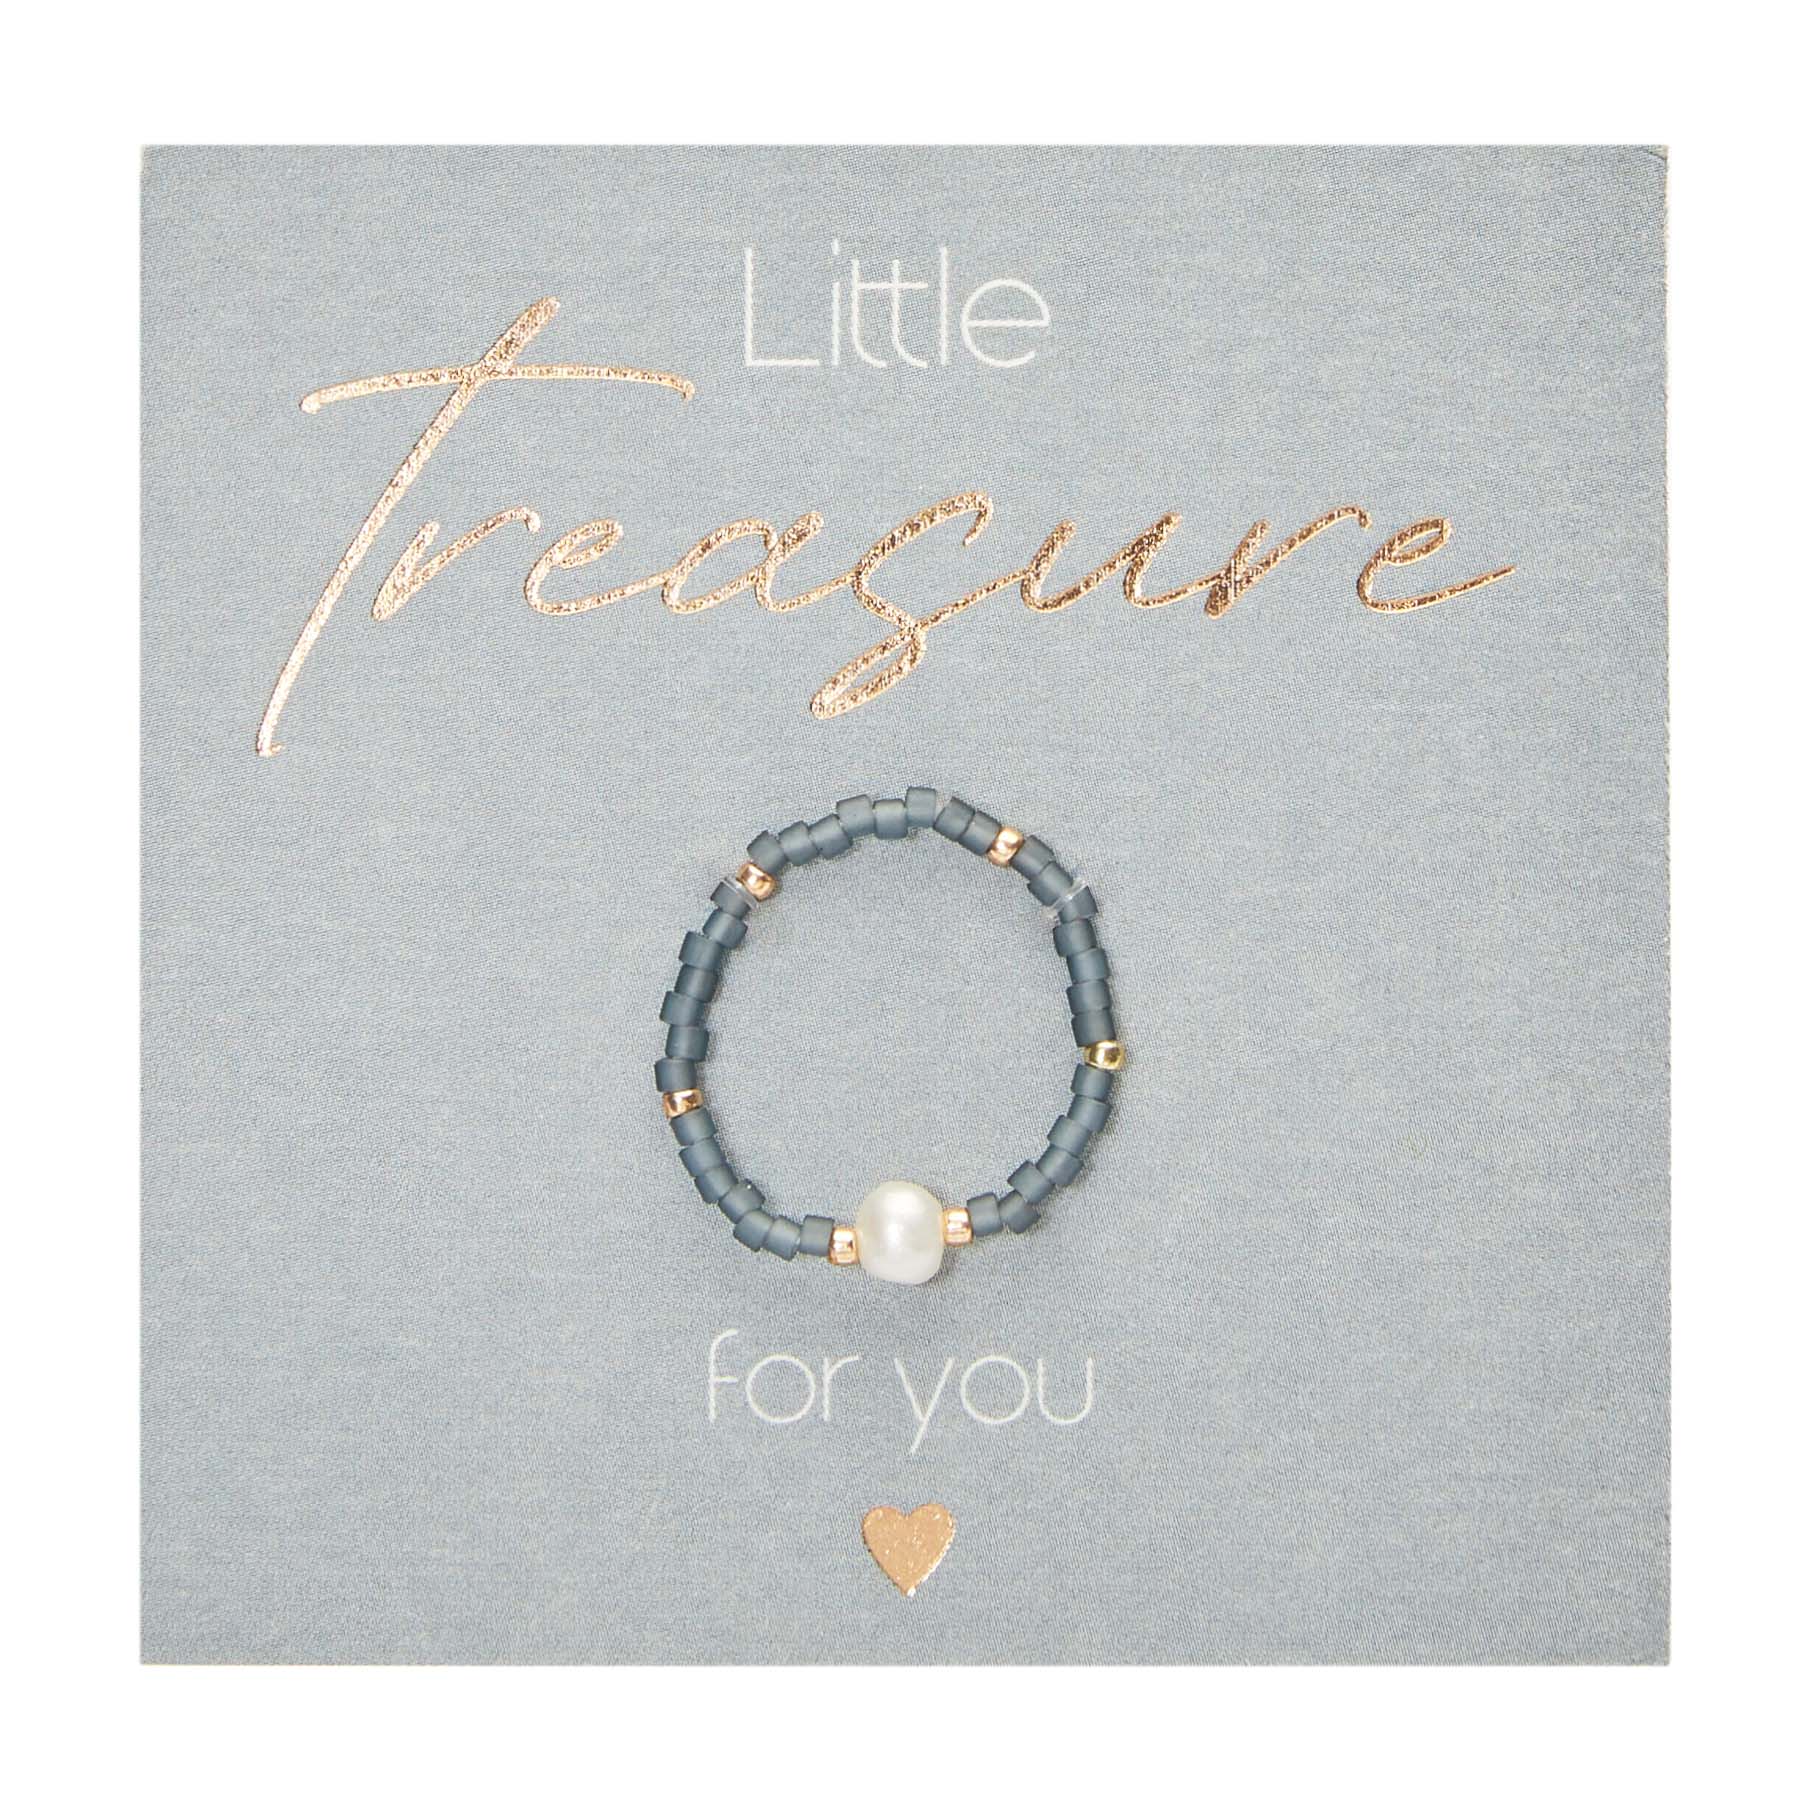 Display Ringe "Little Treasure"